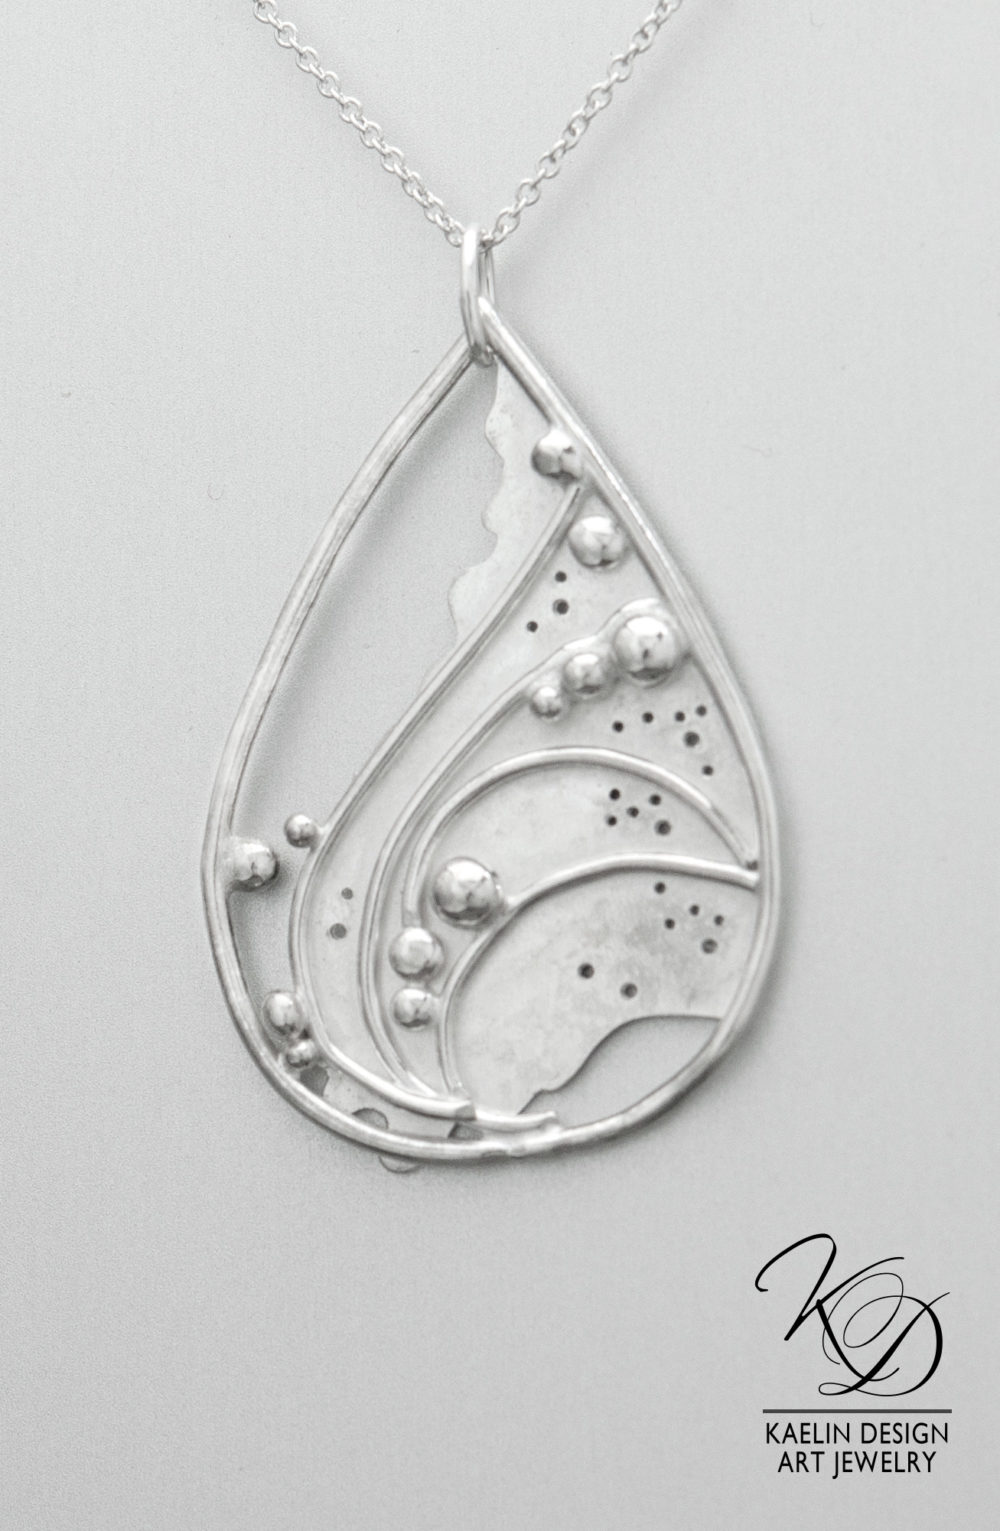 Sea Foam Sterling Silver Ocean inspired Art Jewelry Pendant by Kaelin Design